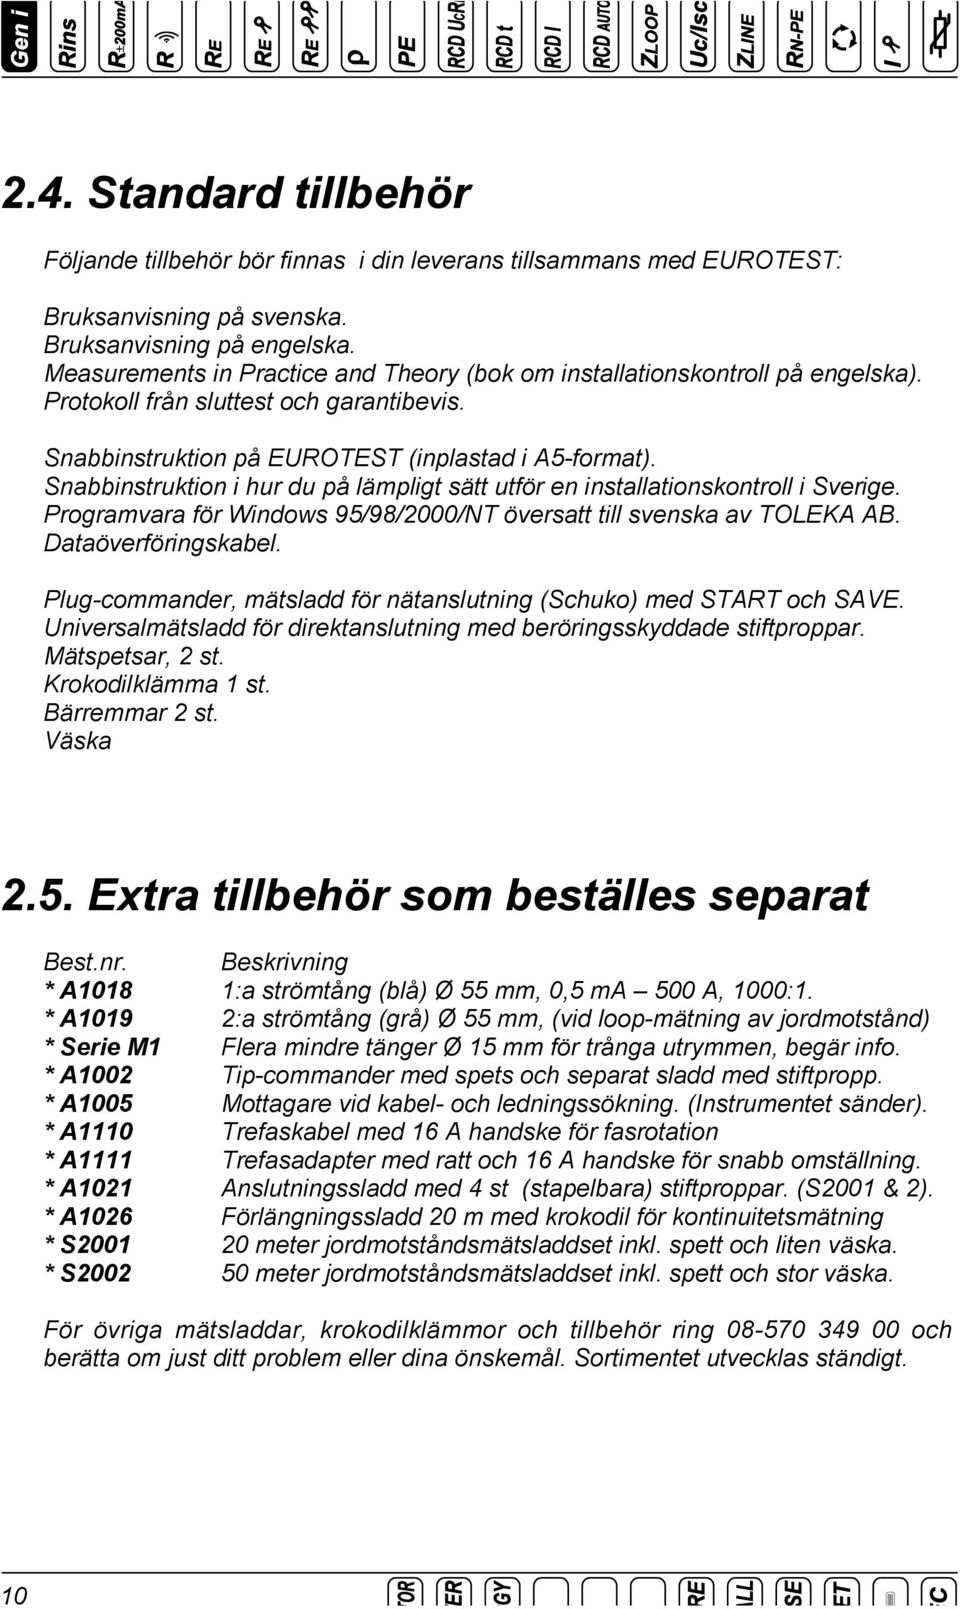 Snabbinstruktion i hur du på lämpligt sätt utför en installationskontroll i Sverige. Programvara för Windows 95/98/2000/NT översatt till svenska av TOLEKA AB. Dataöverföringskabel.